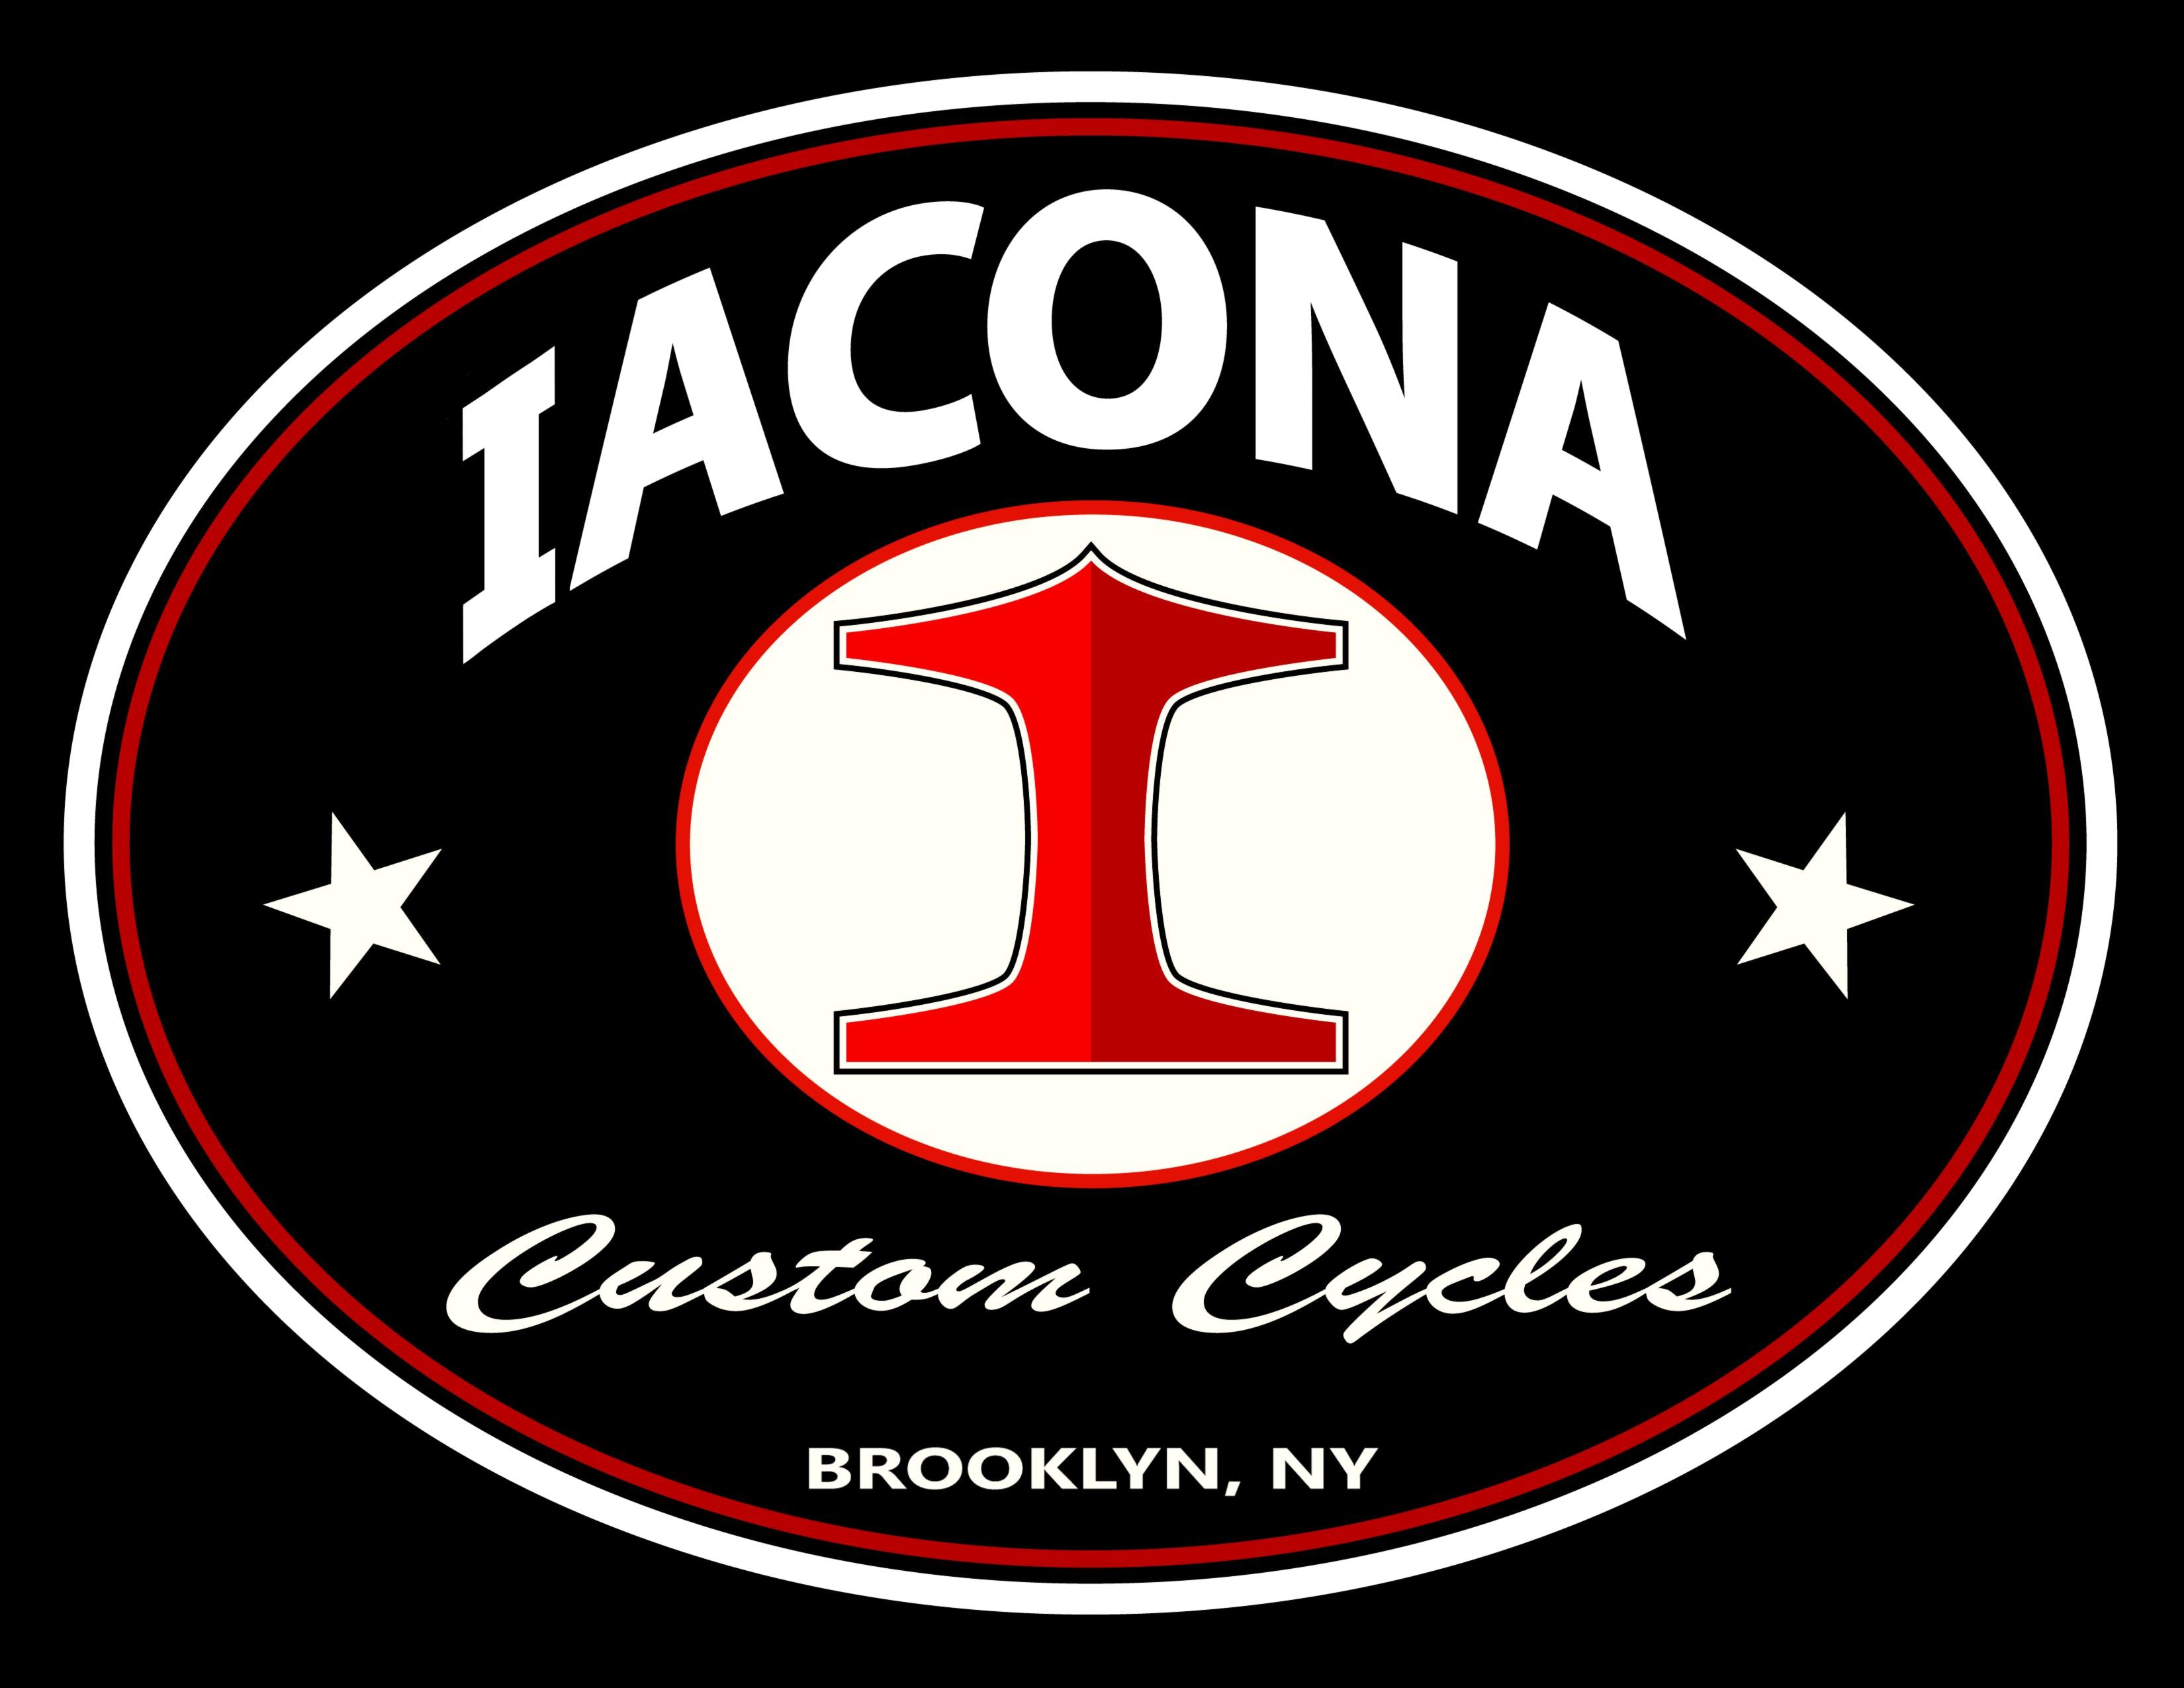 Iacona Custom Cycles